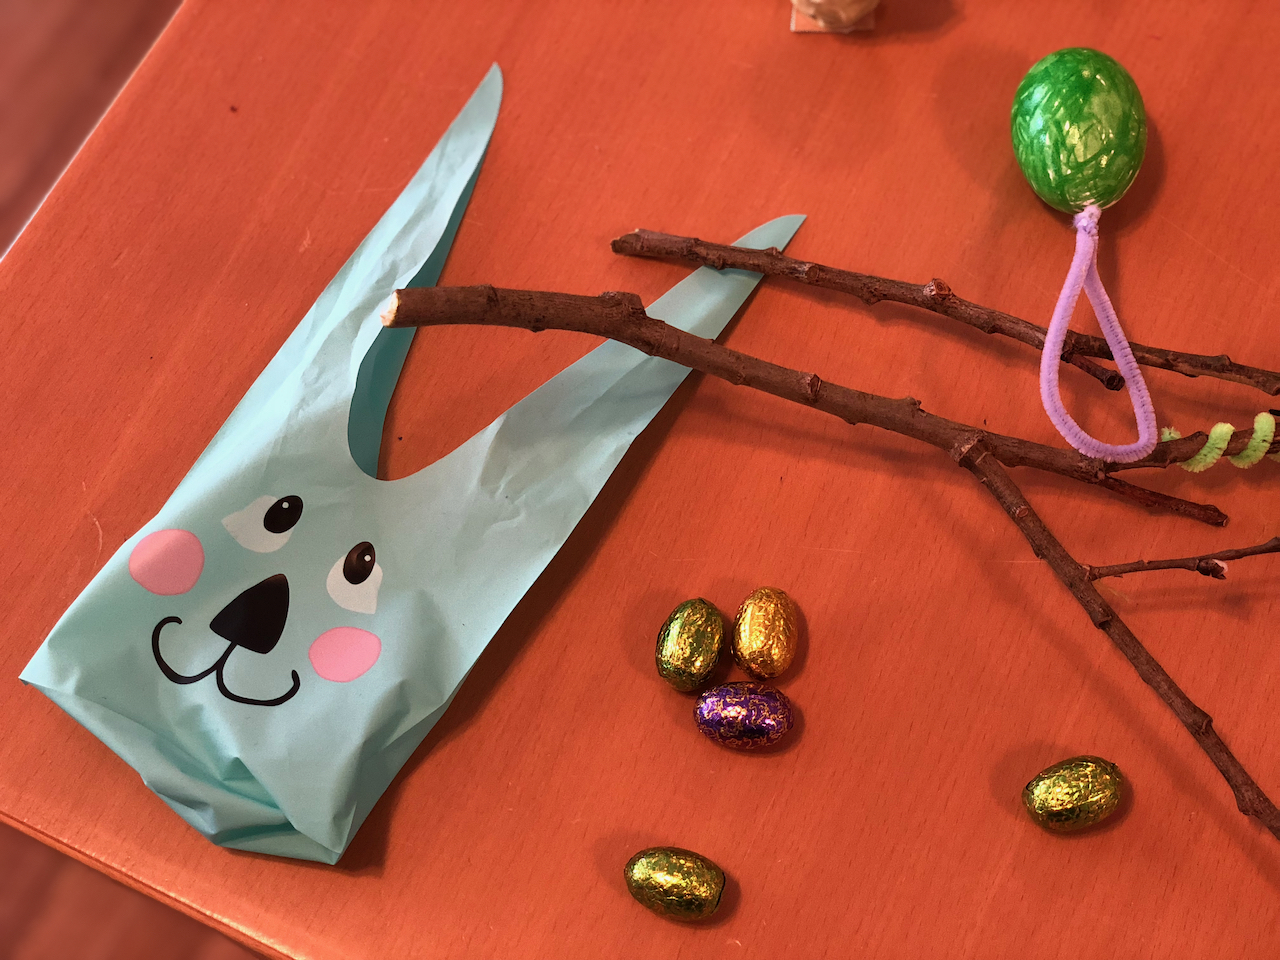 På bordet finns en påse med ett ansikte av en hare och små chokladägg inlindade i papper.